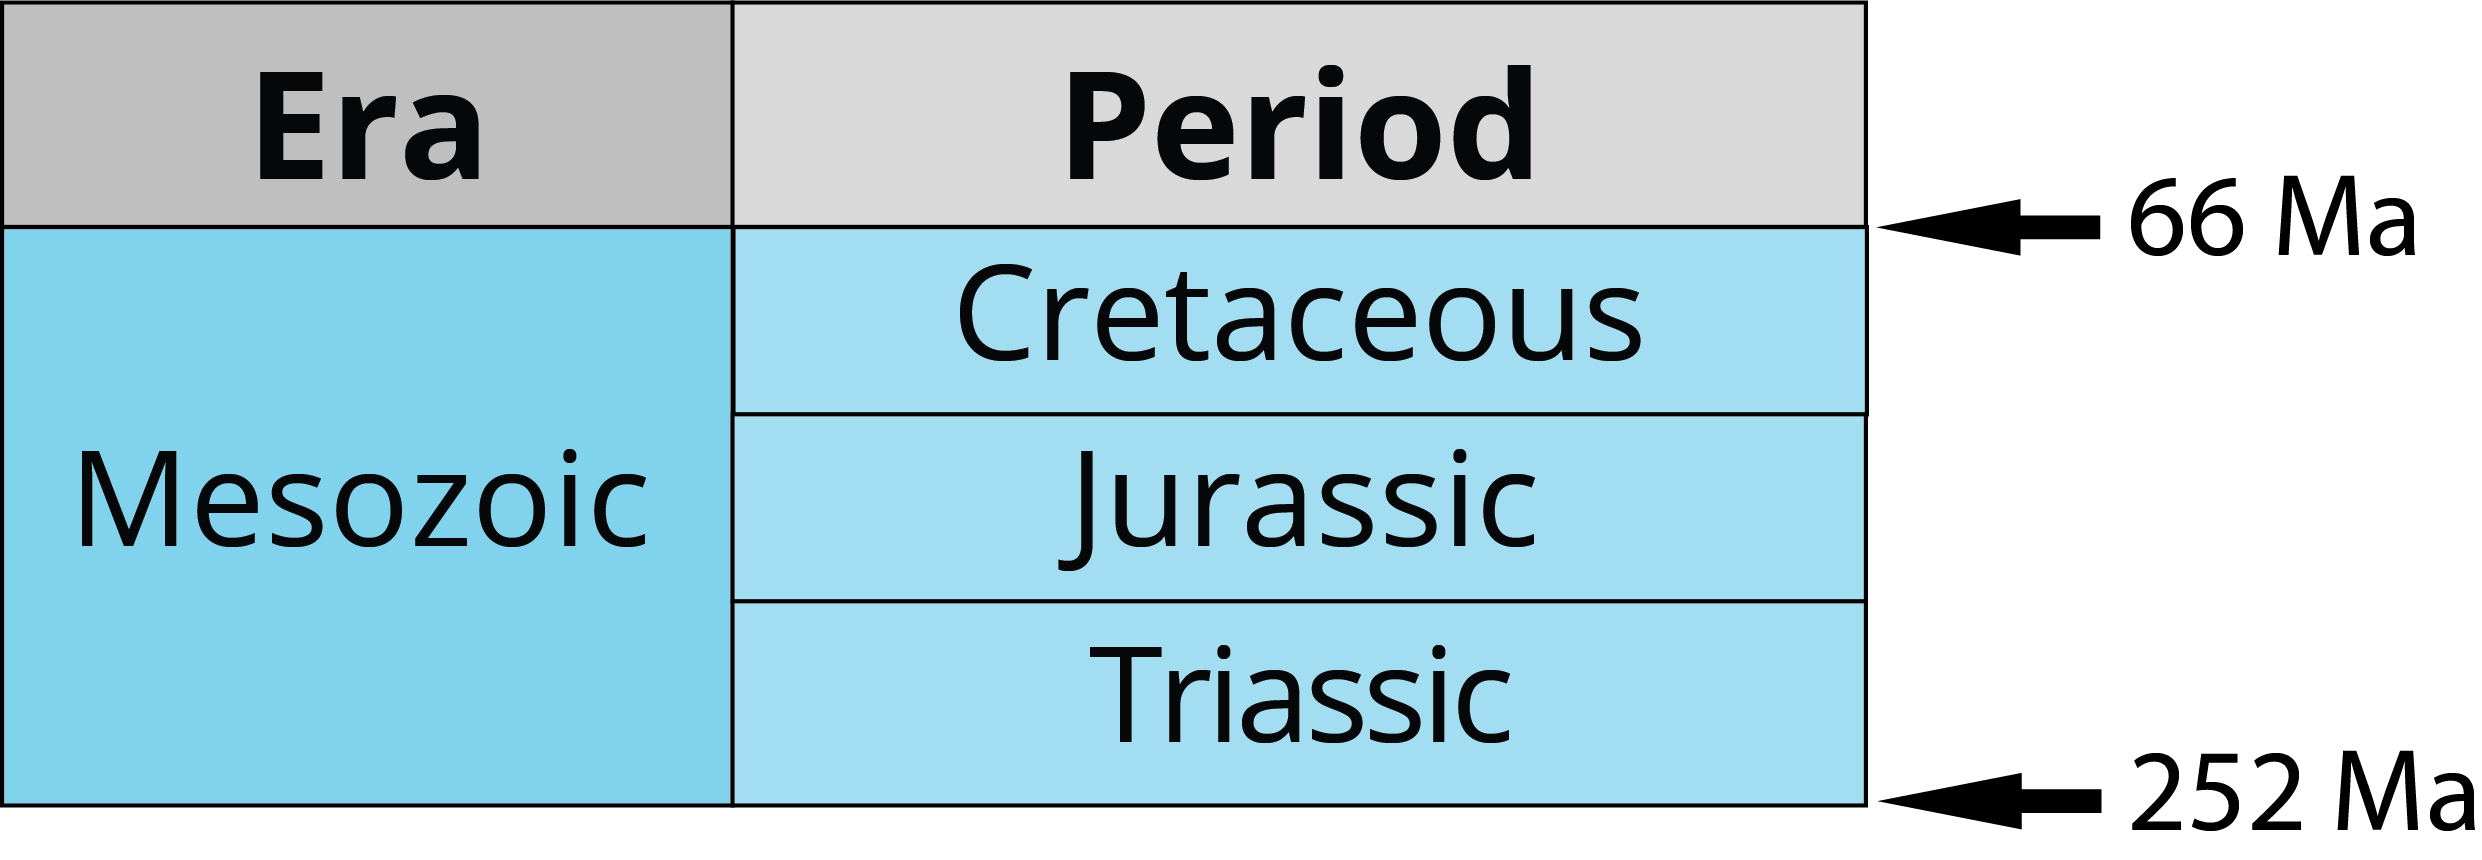 Periods of the Mesozoic era: Triassic, Jurassic, Cretaceous